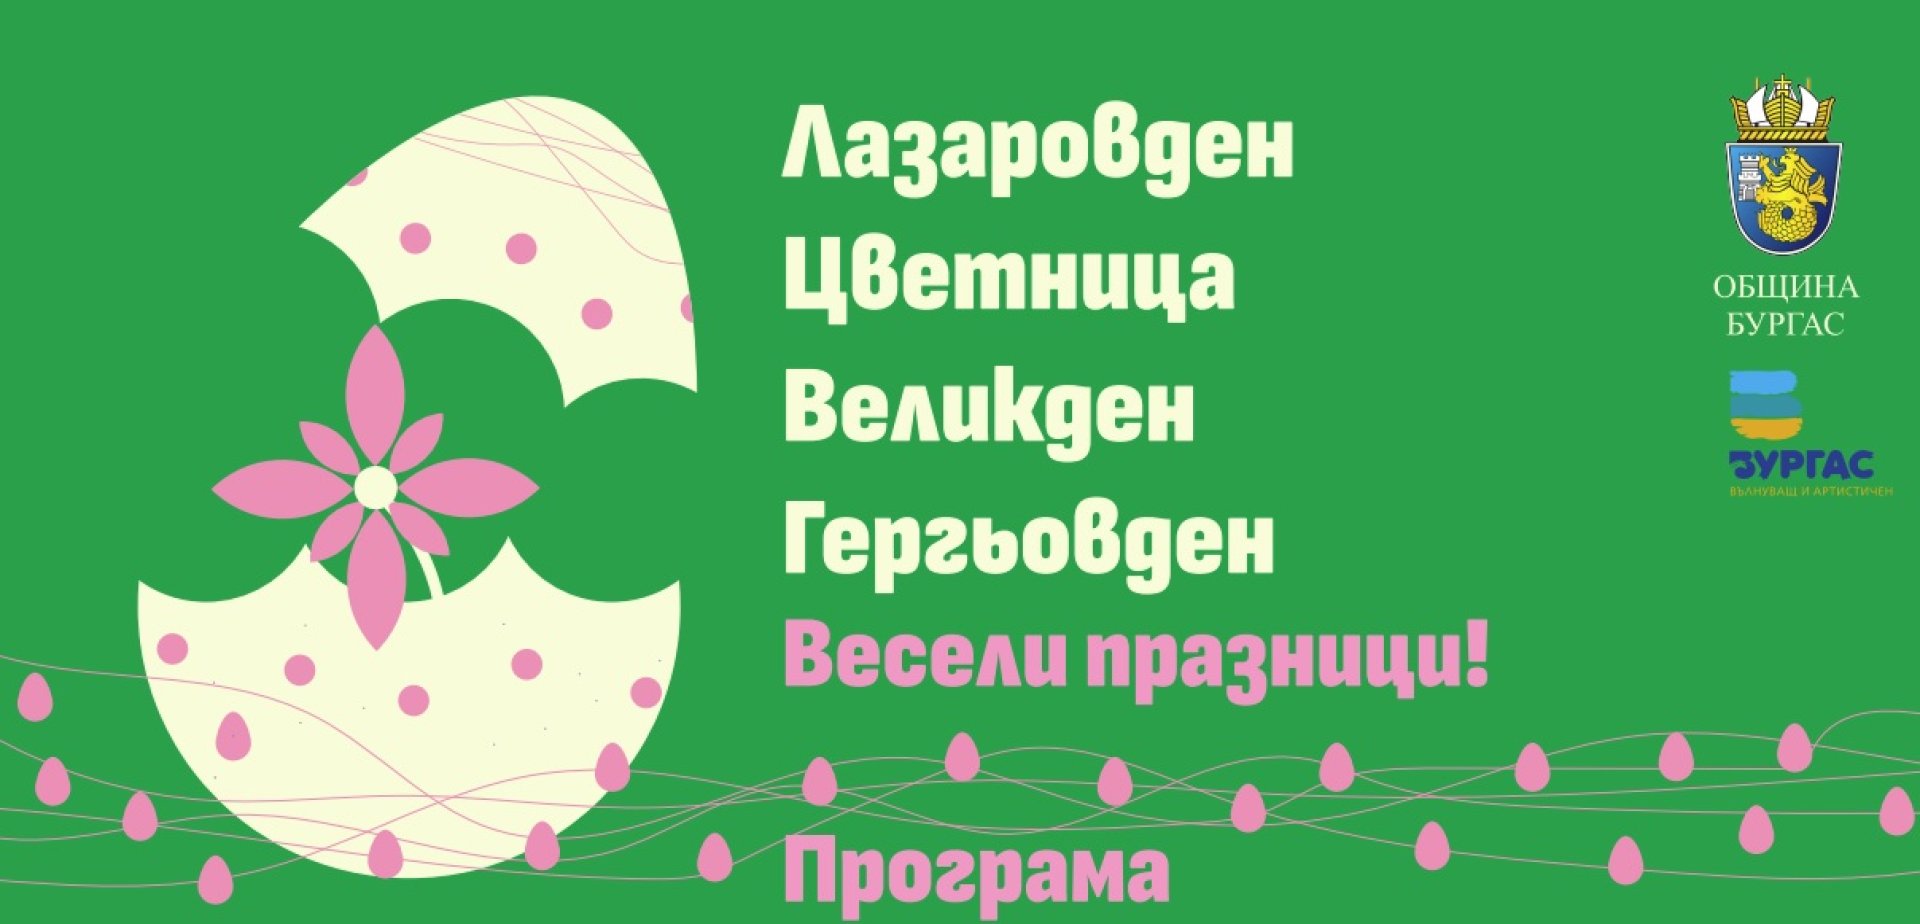 Разнообразна е програмата за предстоящите празници в Бургас